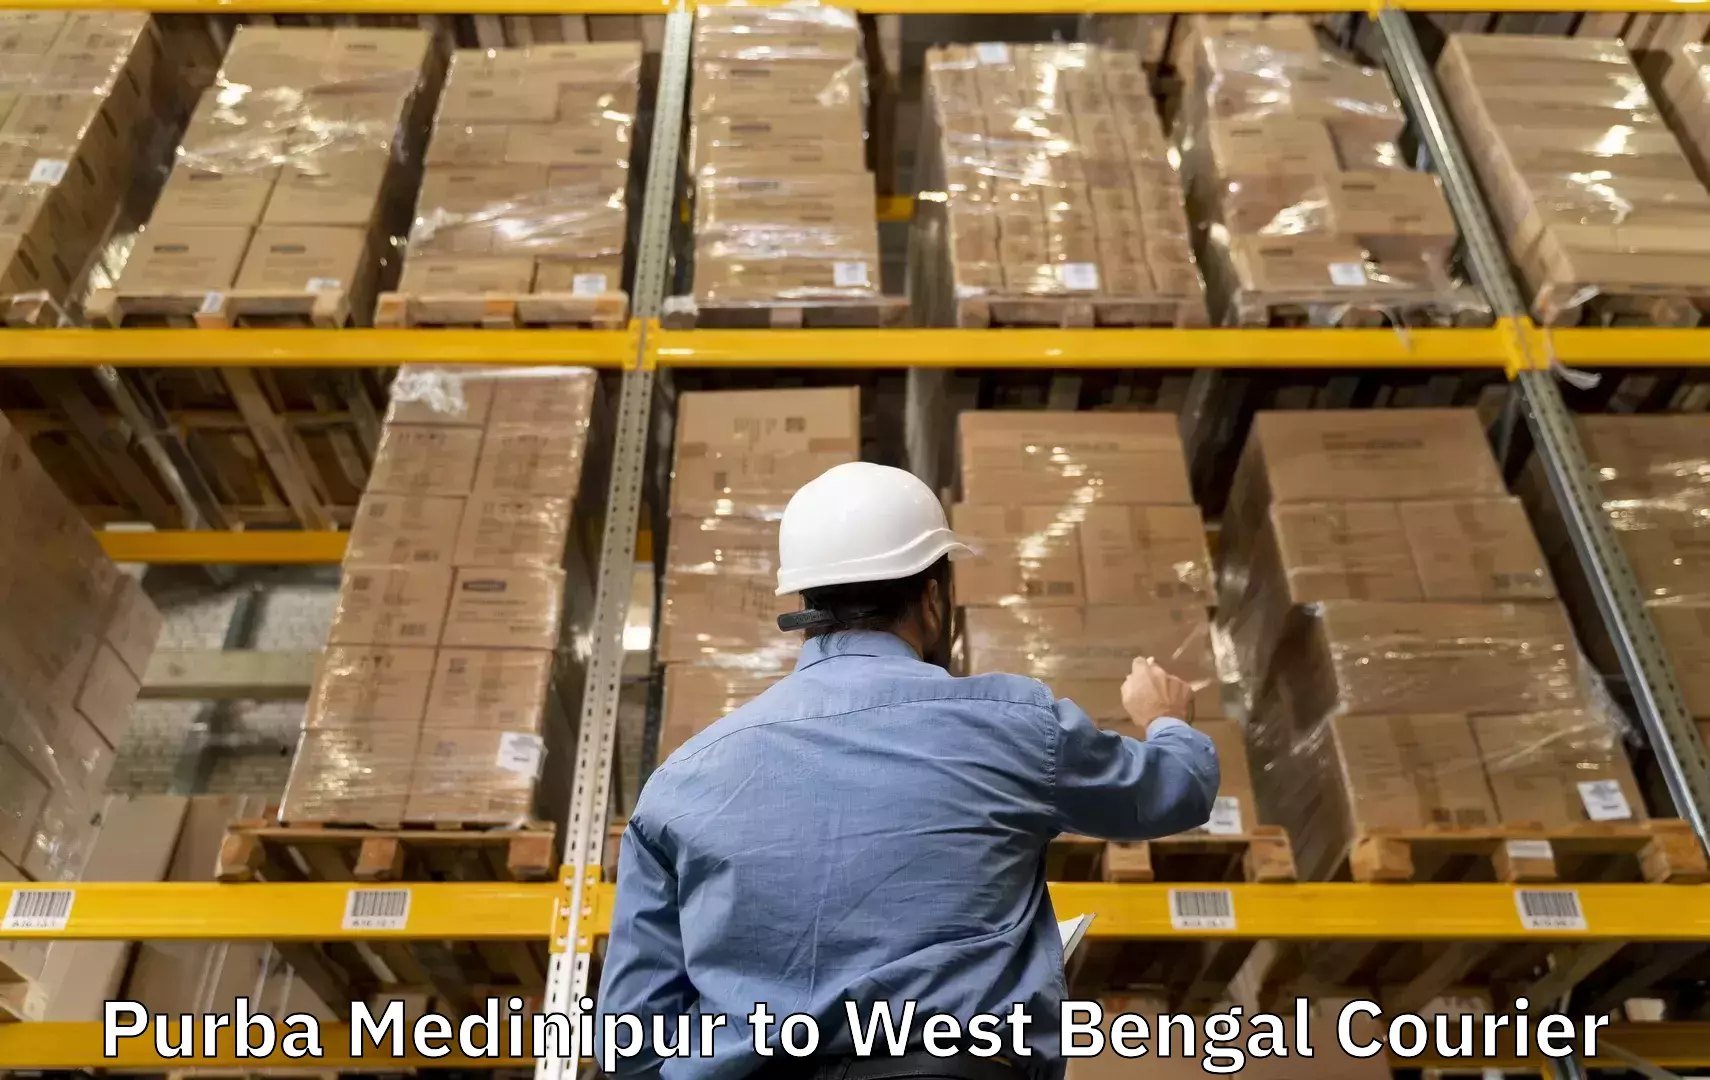 Luggage shipment specialists Purba Medinipur to Puruliya